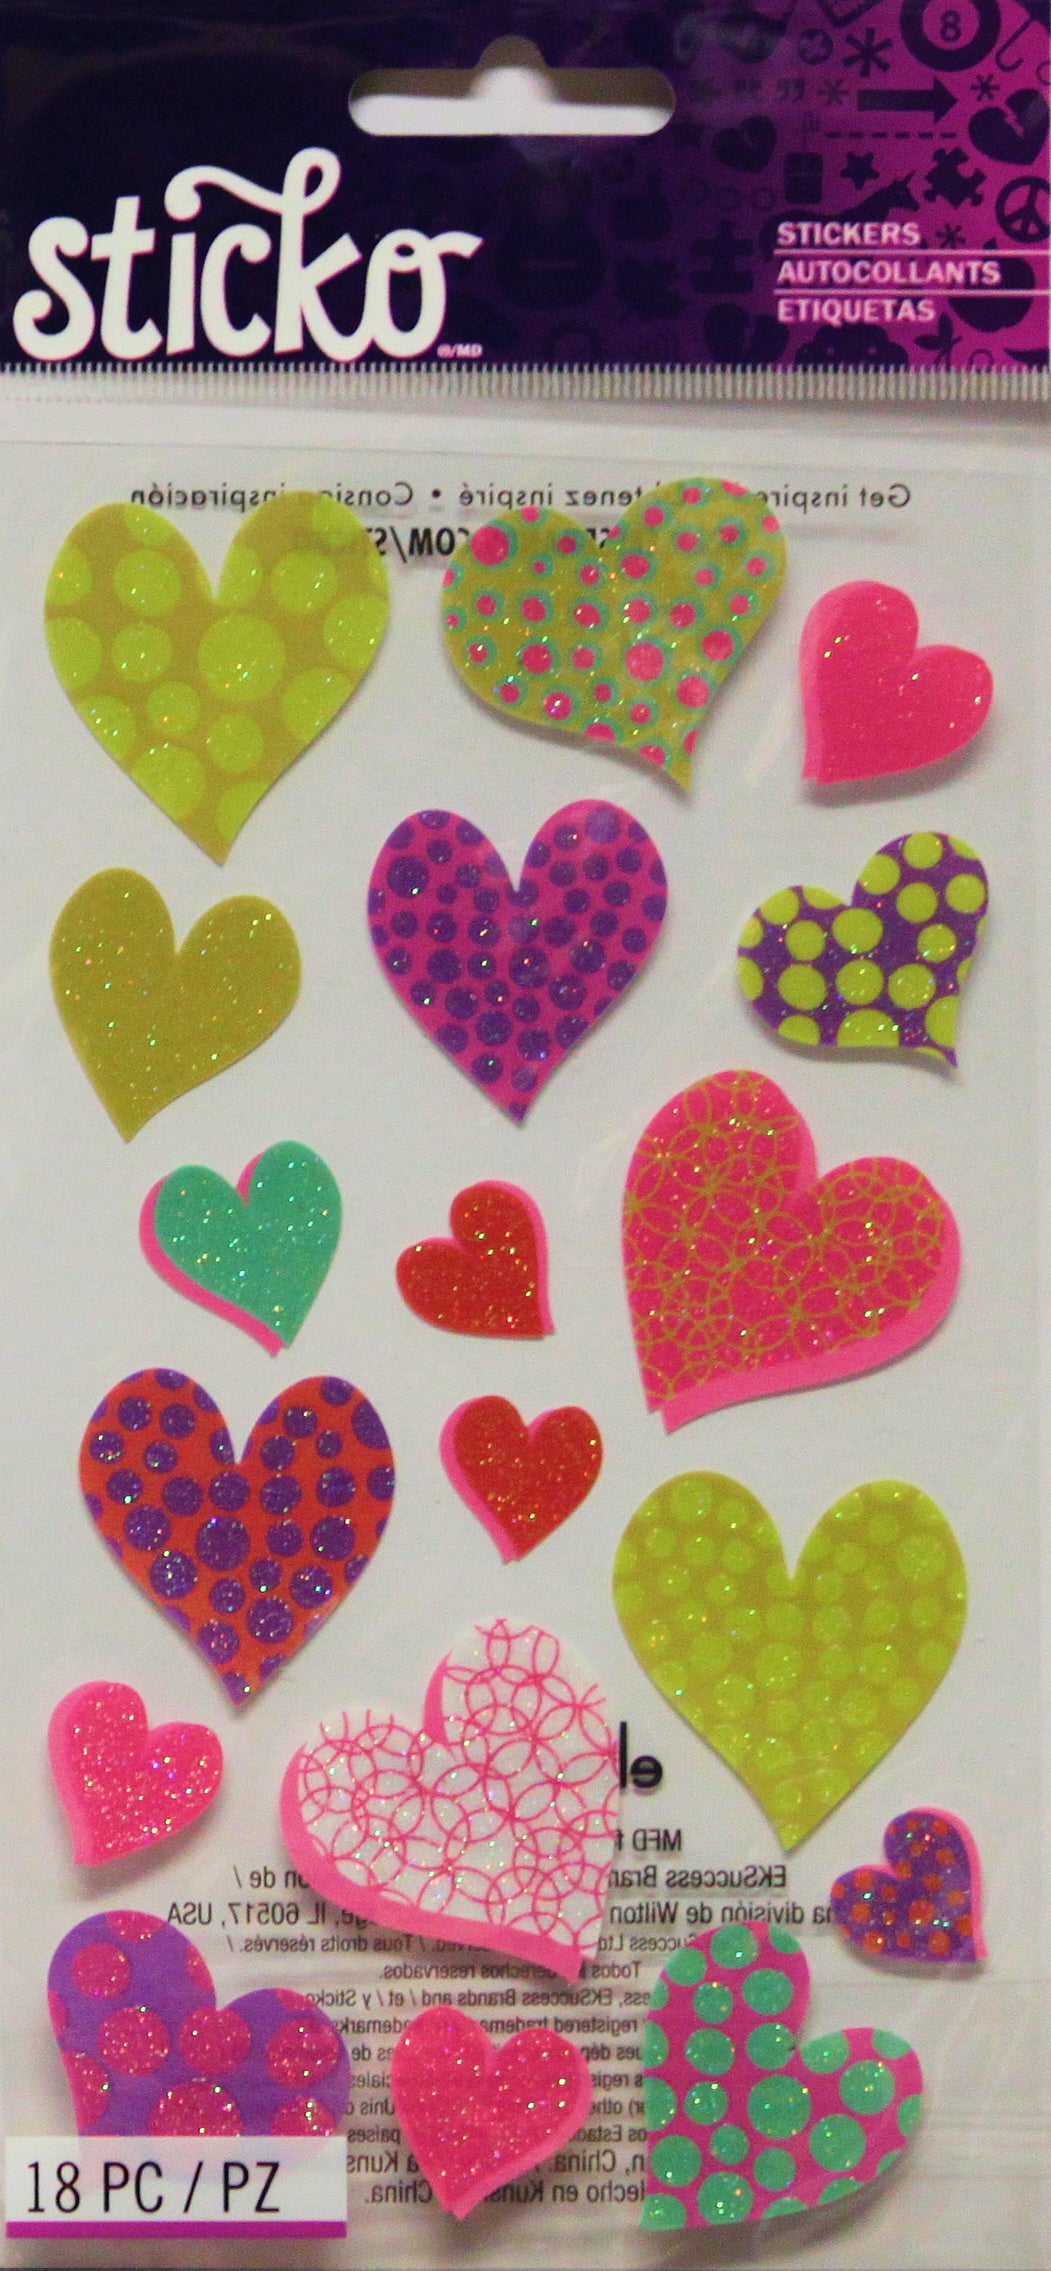 Sticko Heart Circles Sticker Sheet